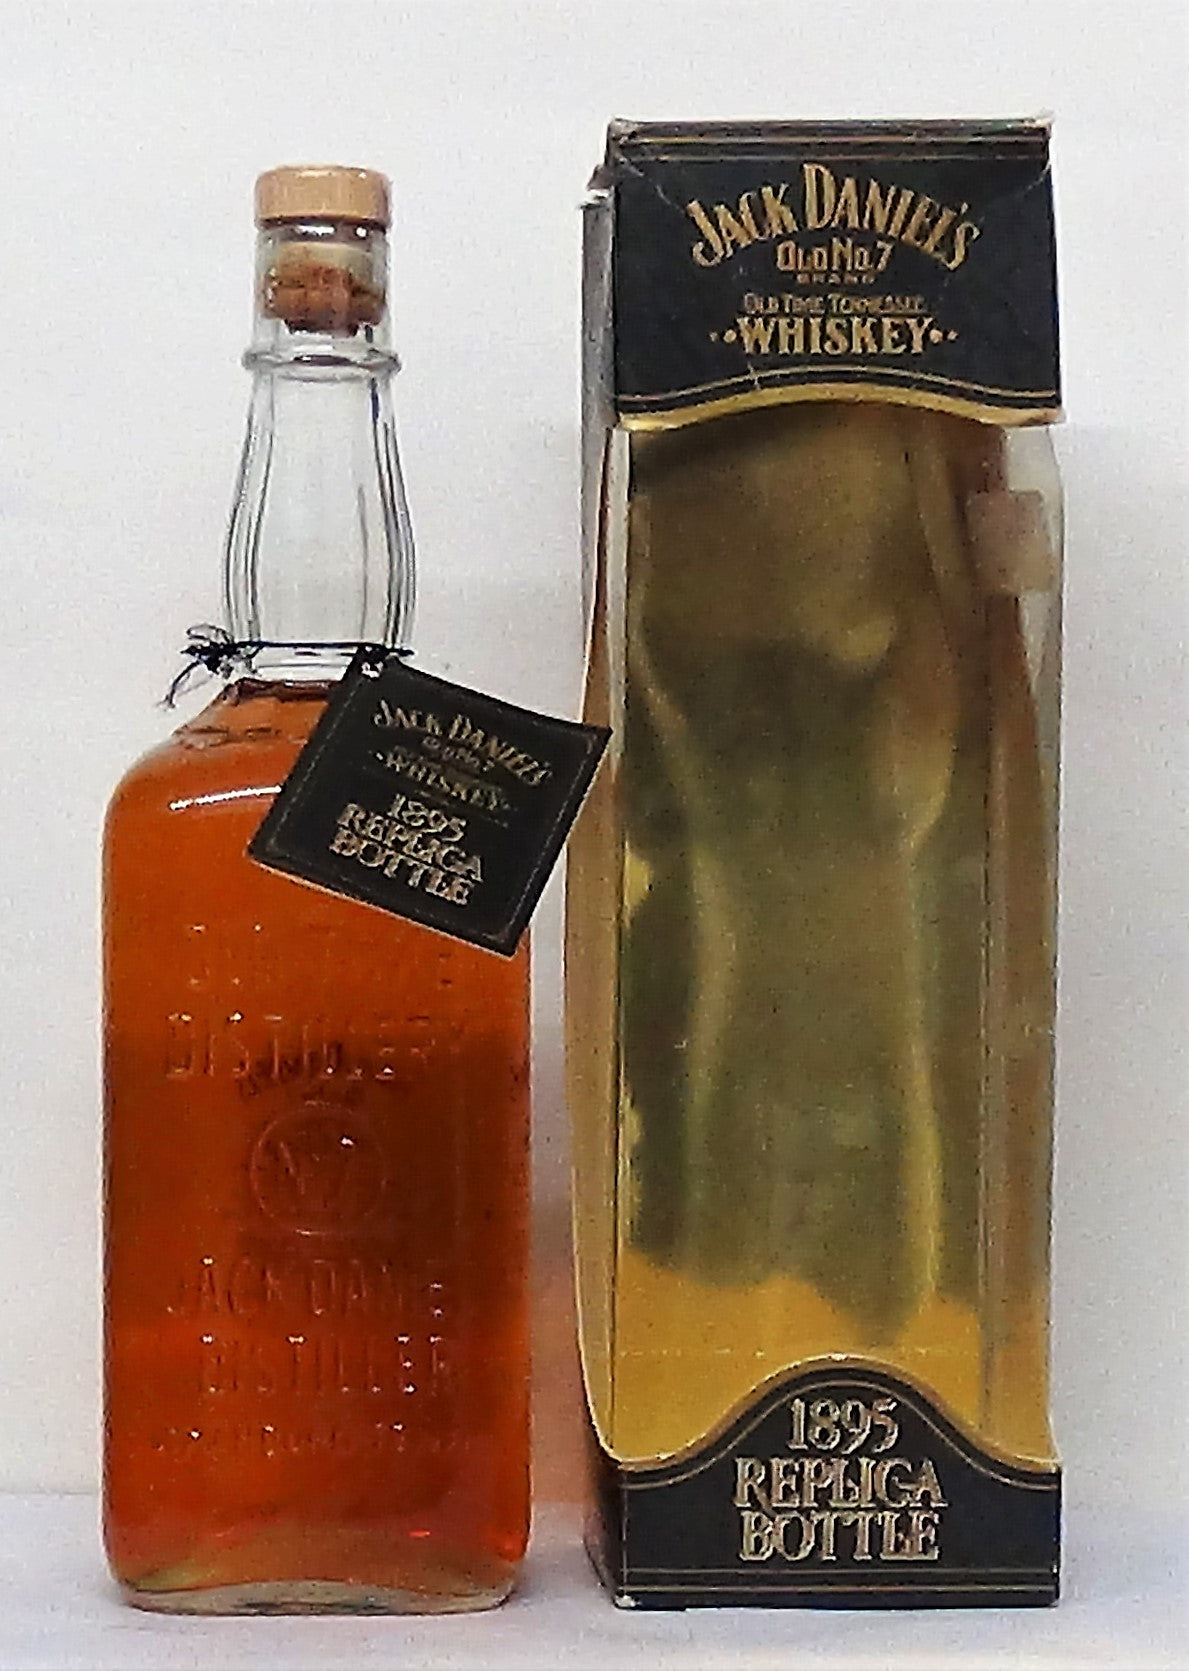 Jack Daniel's No.7, 1 Litre 1895 Replica Bottle 1992 Bottling - Whiske